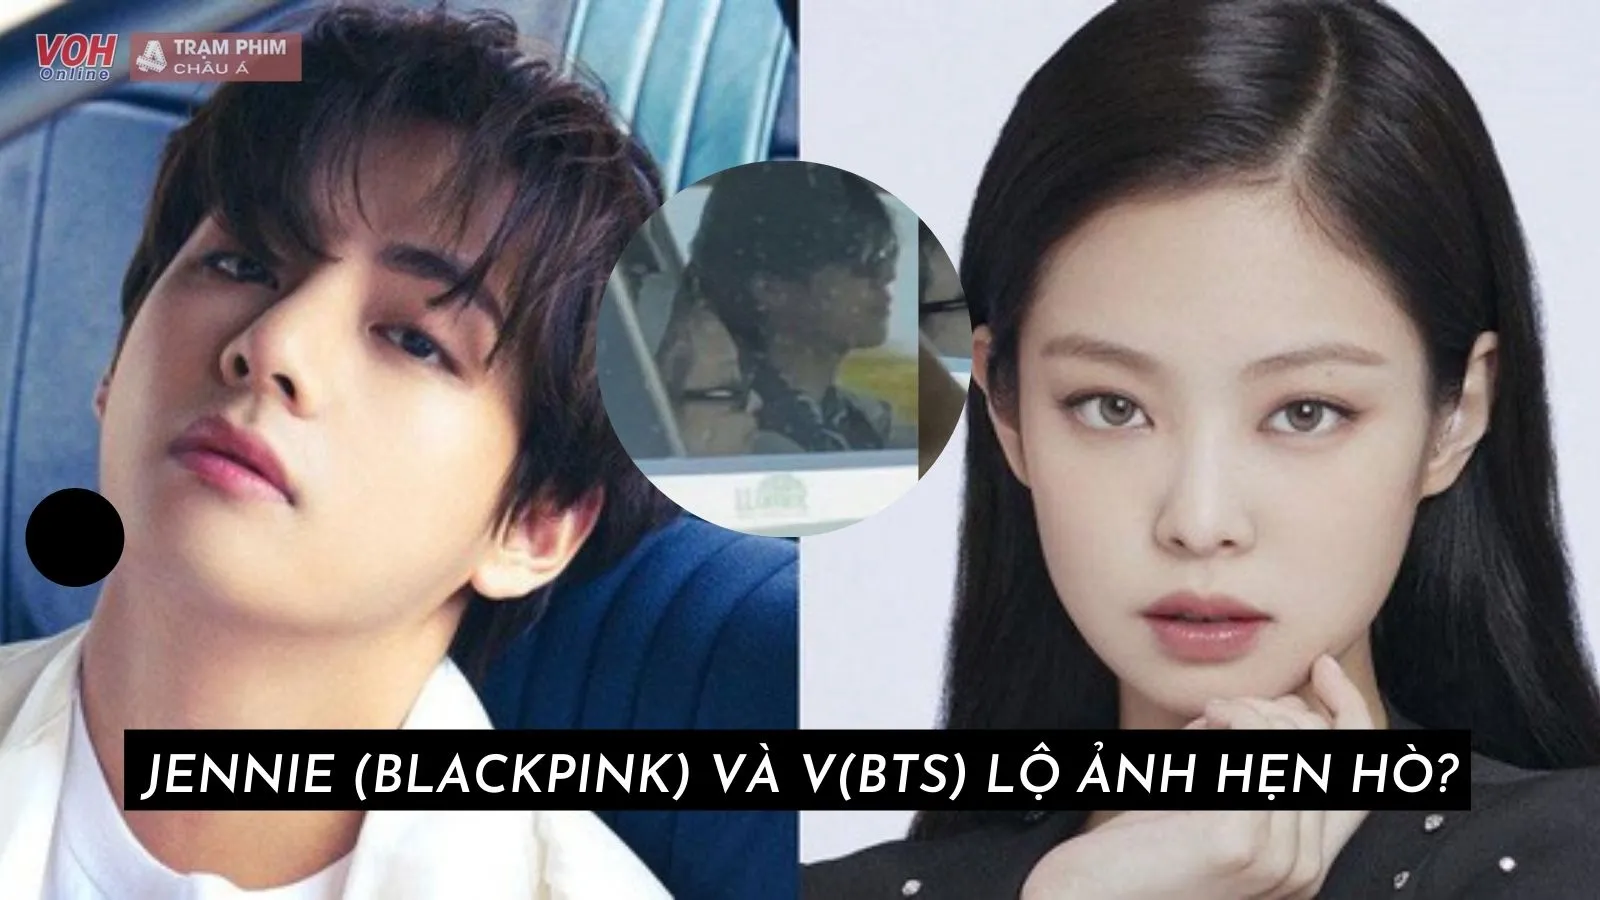 Vượt BTS và BlackPink, IVE trở thành nghệ sĩ dẫn đầu Kpop 2022